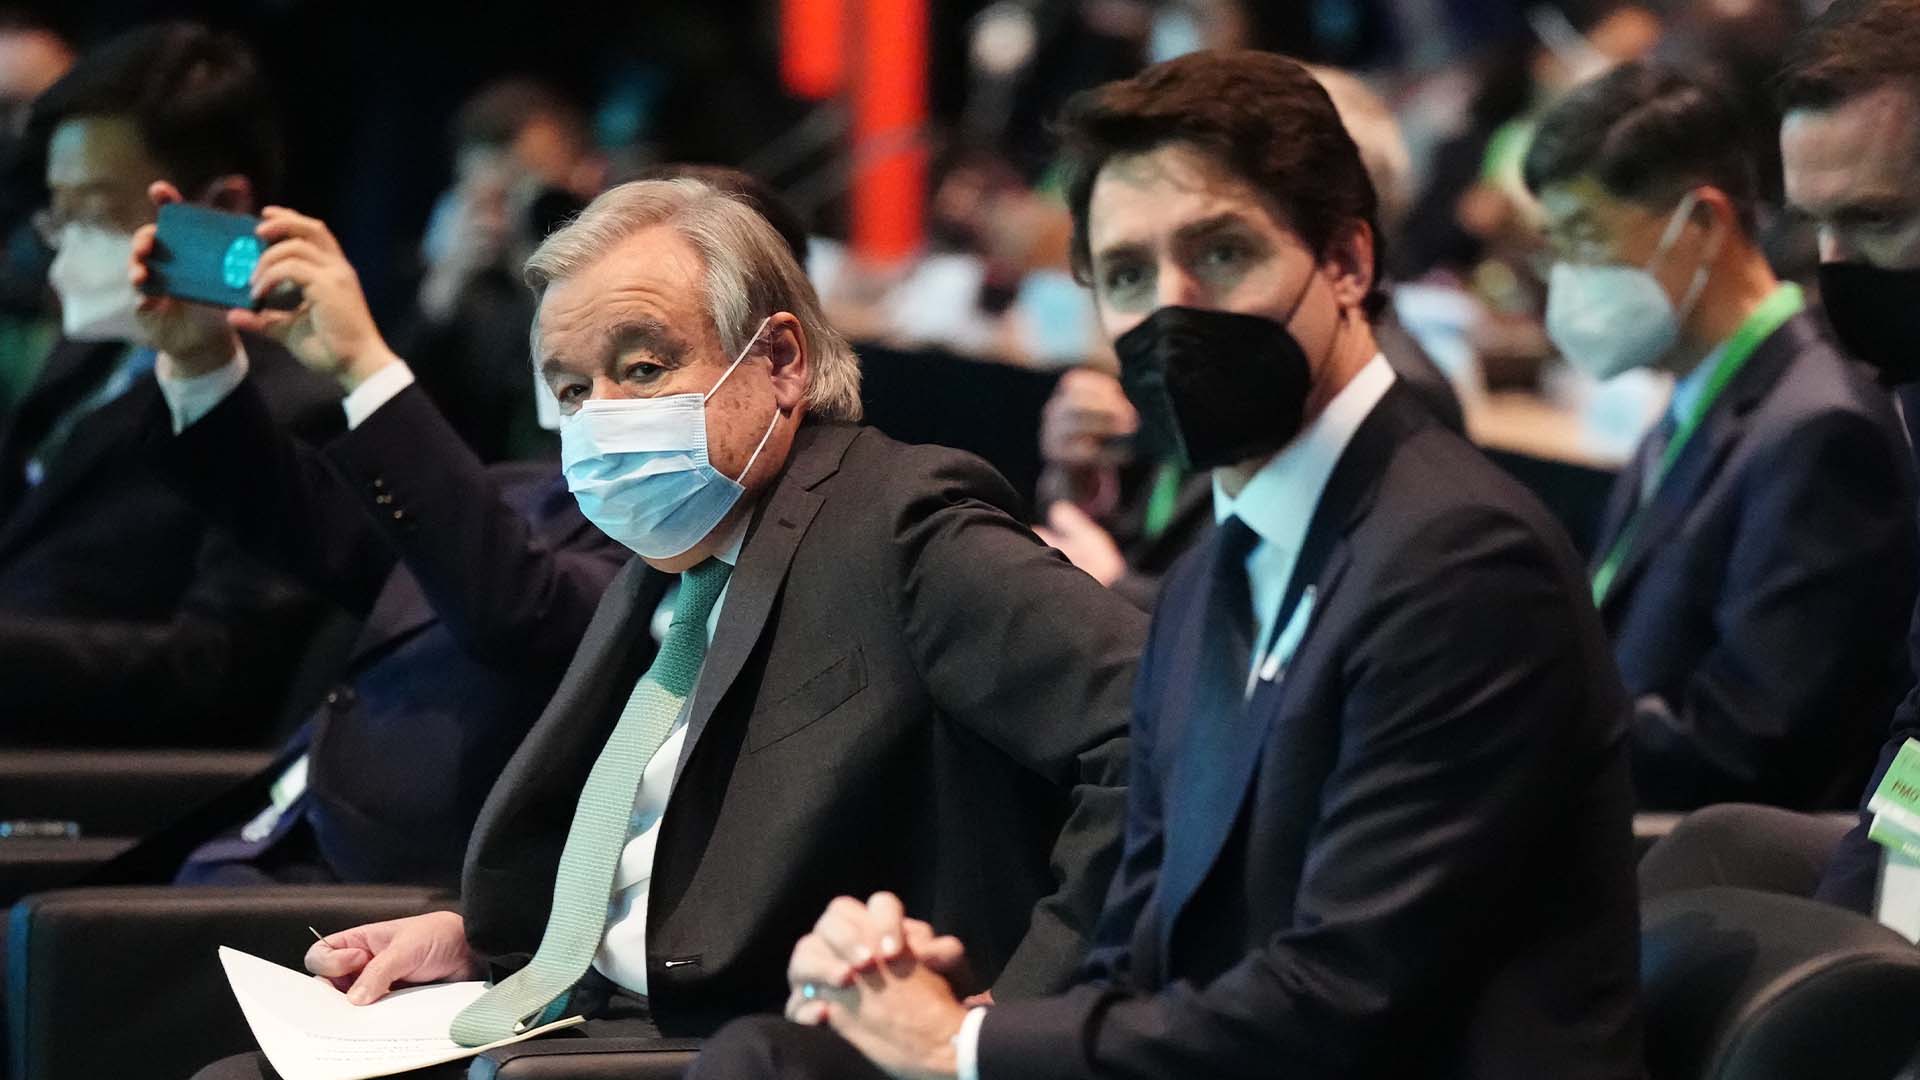 Le secrétaire général des Nations Unies Antonio Guterres, à gauche, et le premier ministre canadien Justin Trudeau, au centre, assistent à la cérémonie d'ouverture de la 15e réunion de la Conférence des Parties (COP15) à la Convention des Nations Unies sur la diversité biologique à Montréal mardi 6 décembre 2022.